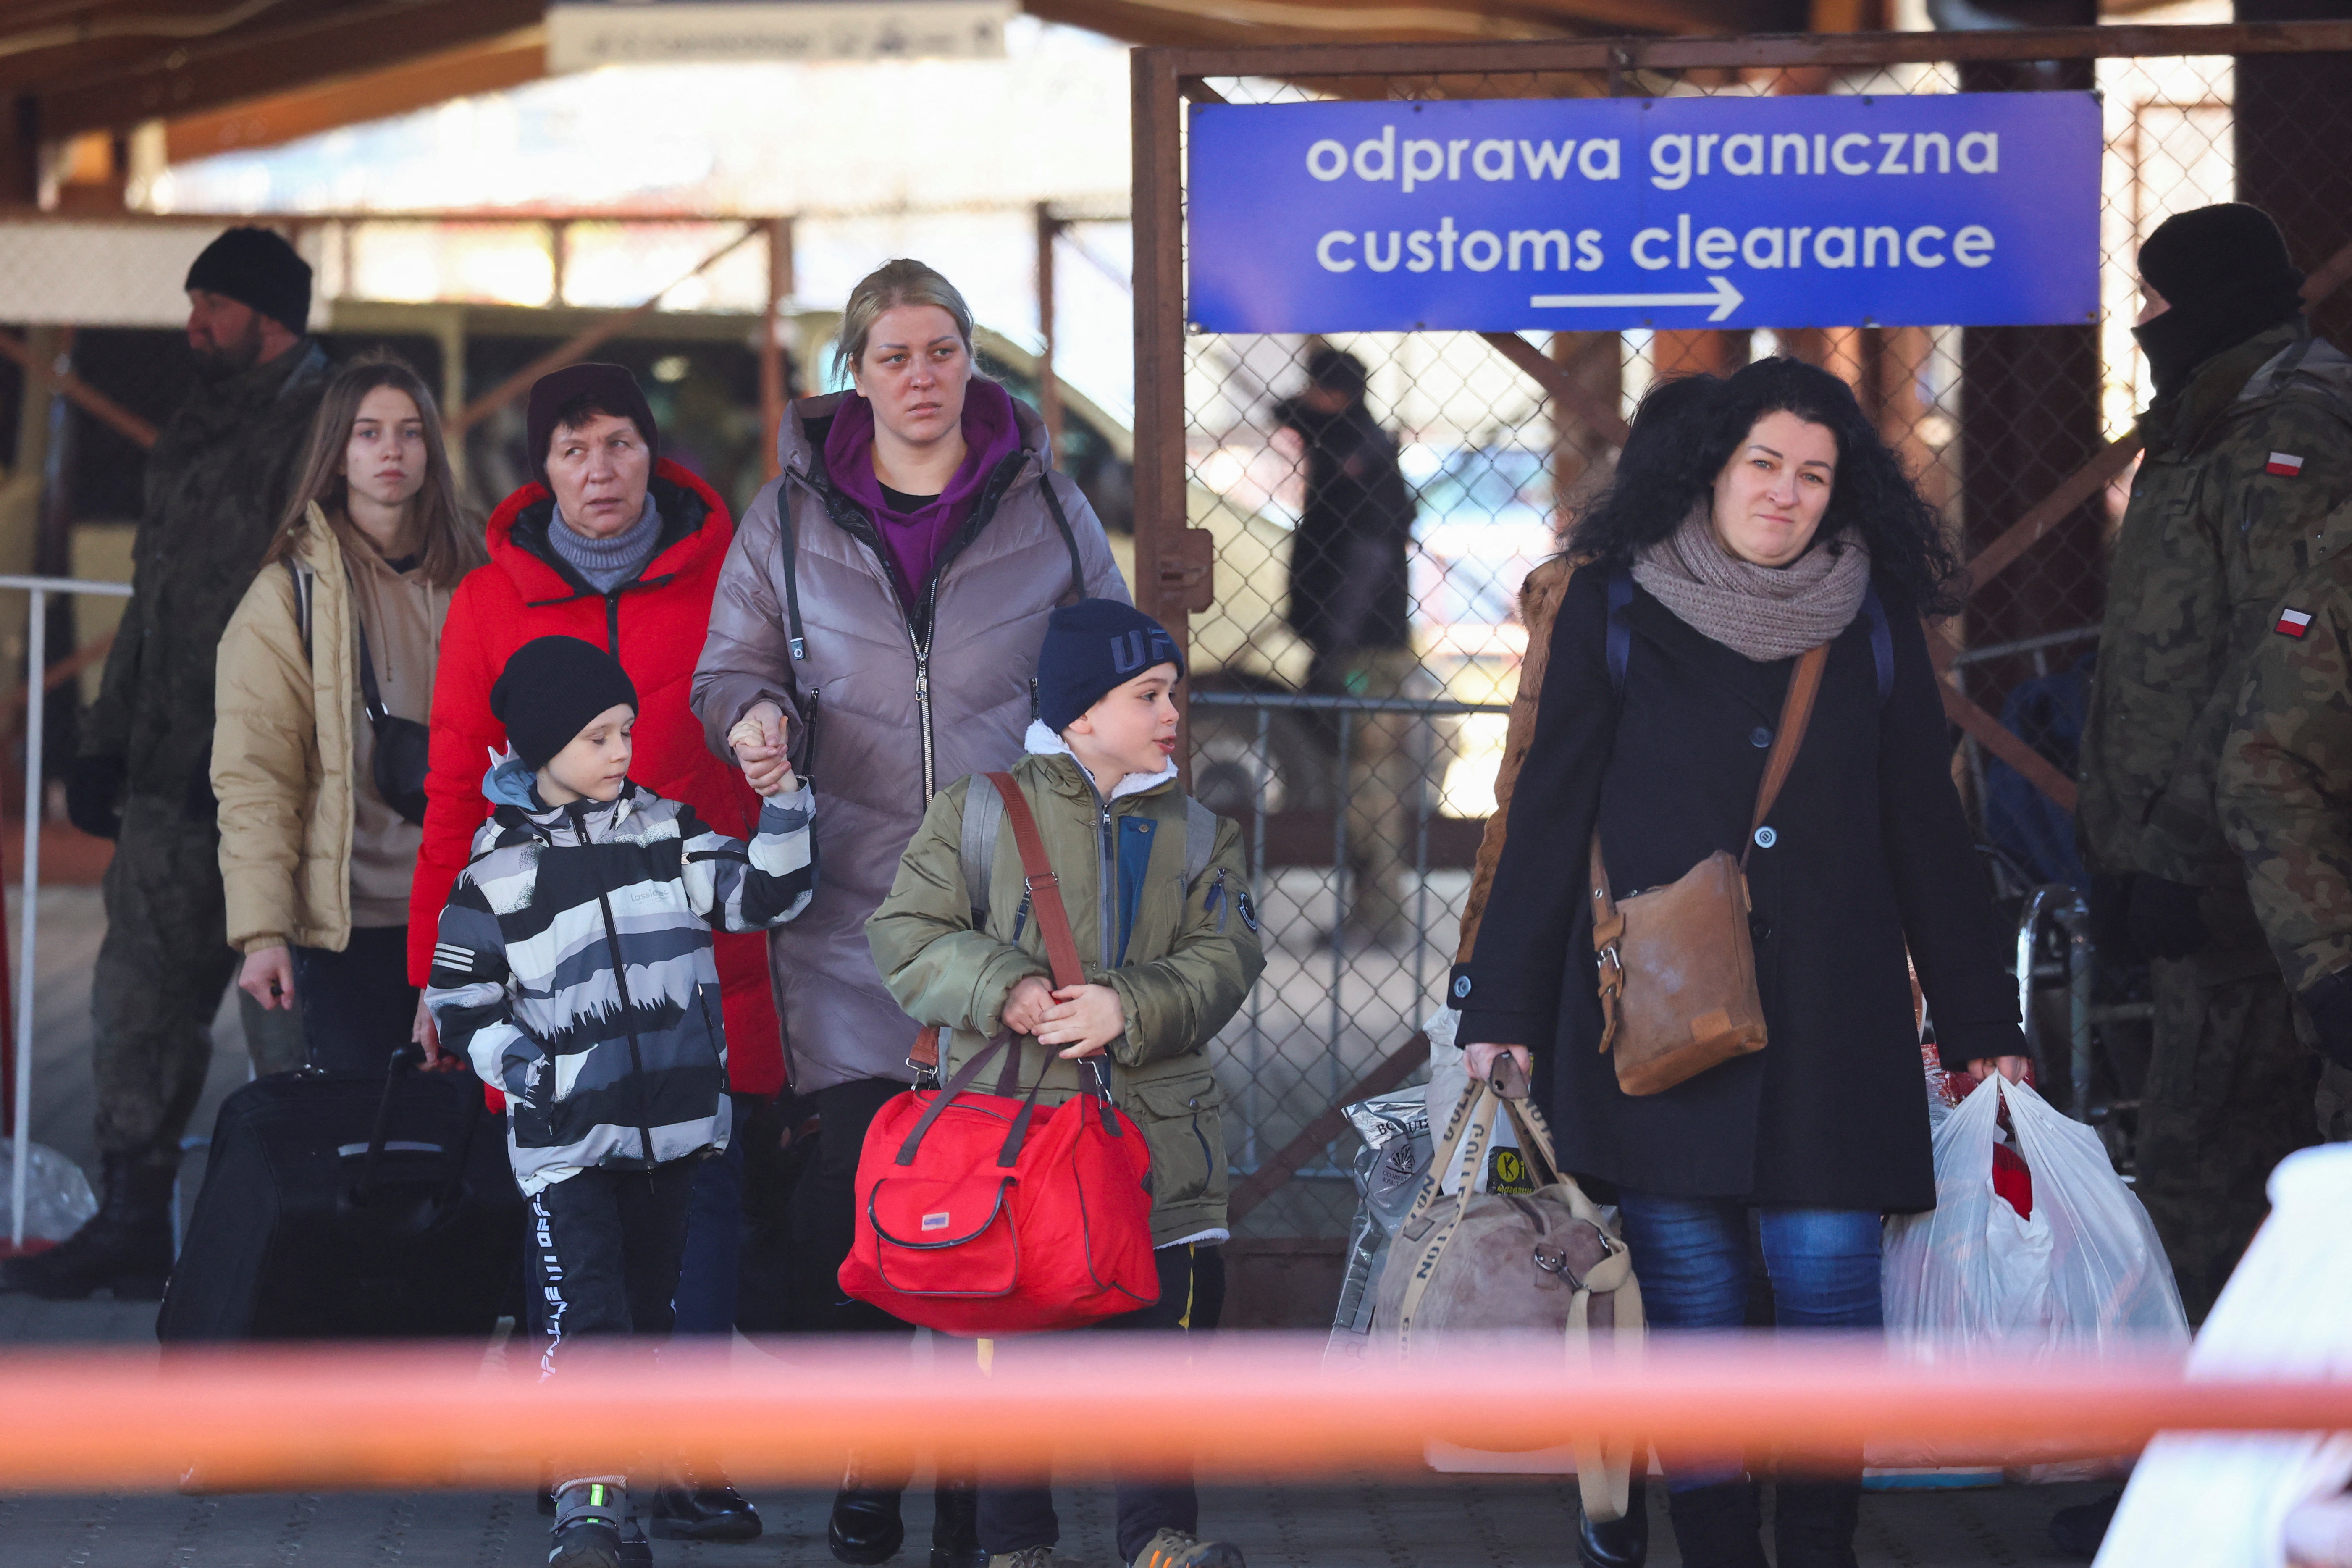 Las autoridades confirmaron las personas saldrán desde Trostianets, Lebedin, Konotop, Velyka Pisarivka y Krasnopillia hacia la ciudad de Poltava. Todas las localidades son pertenecientes a la región de Sumy